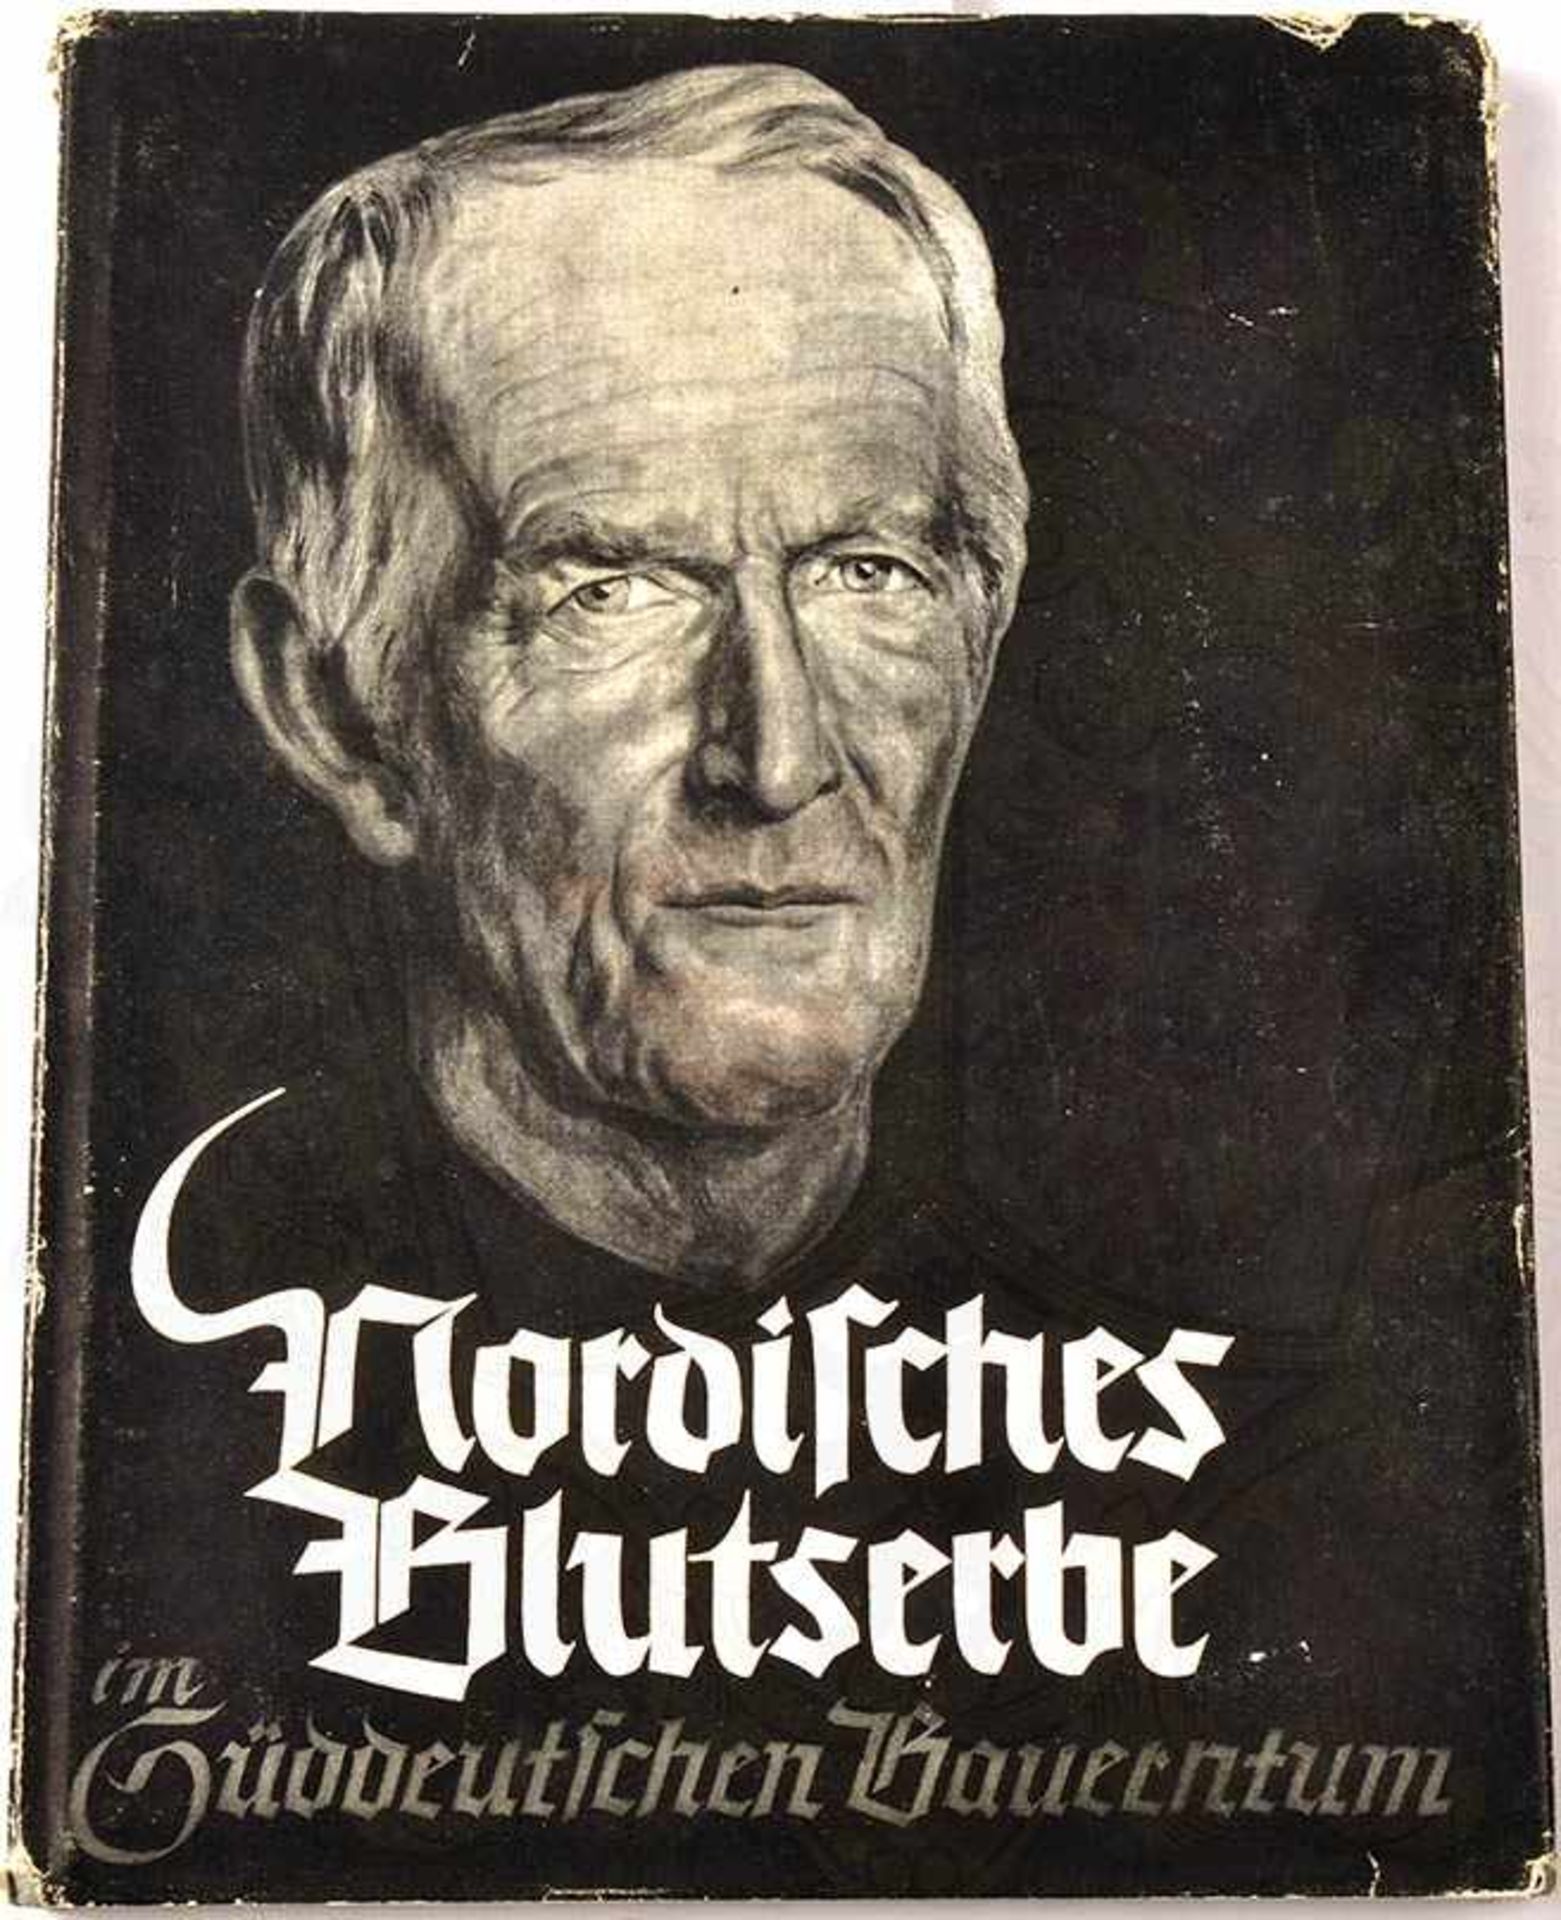 NORDISCHES BLUTSERBE IM SÜDDEUTSCHEN BAUERNTUM, R. W. Darre, München 1938, m. 36 farb. u. 28 s/w